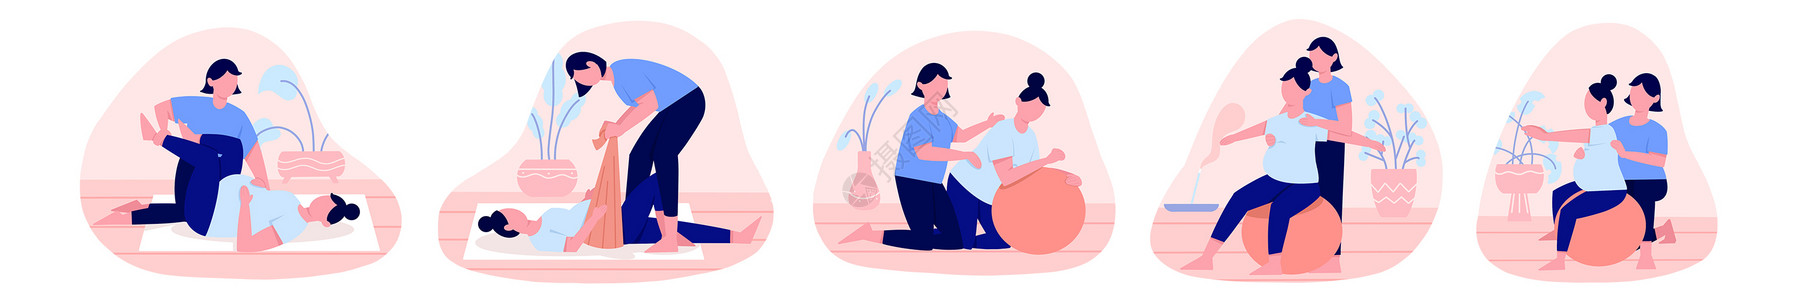 产前筛查粉蓝色扁平孕妇产前护理训练瑜伽人物主题场景元素插画